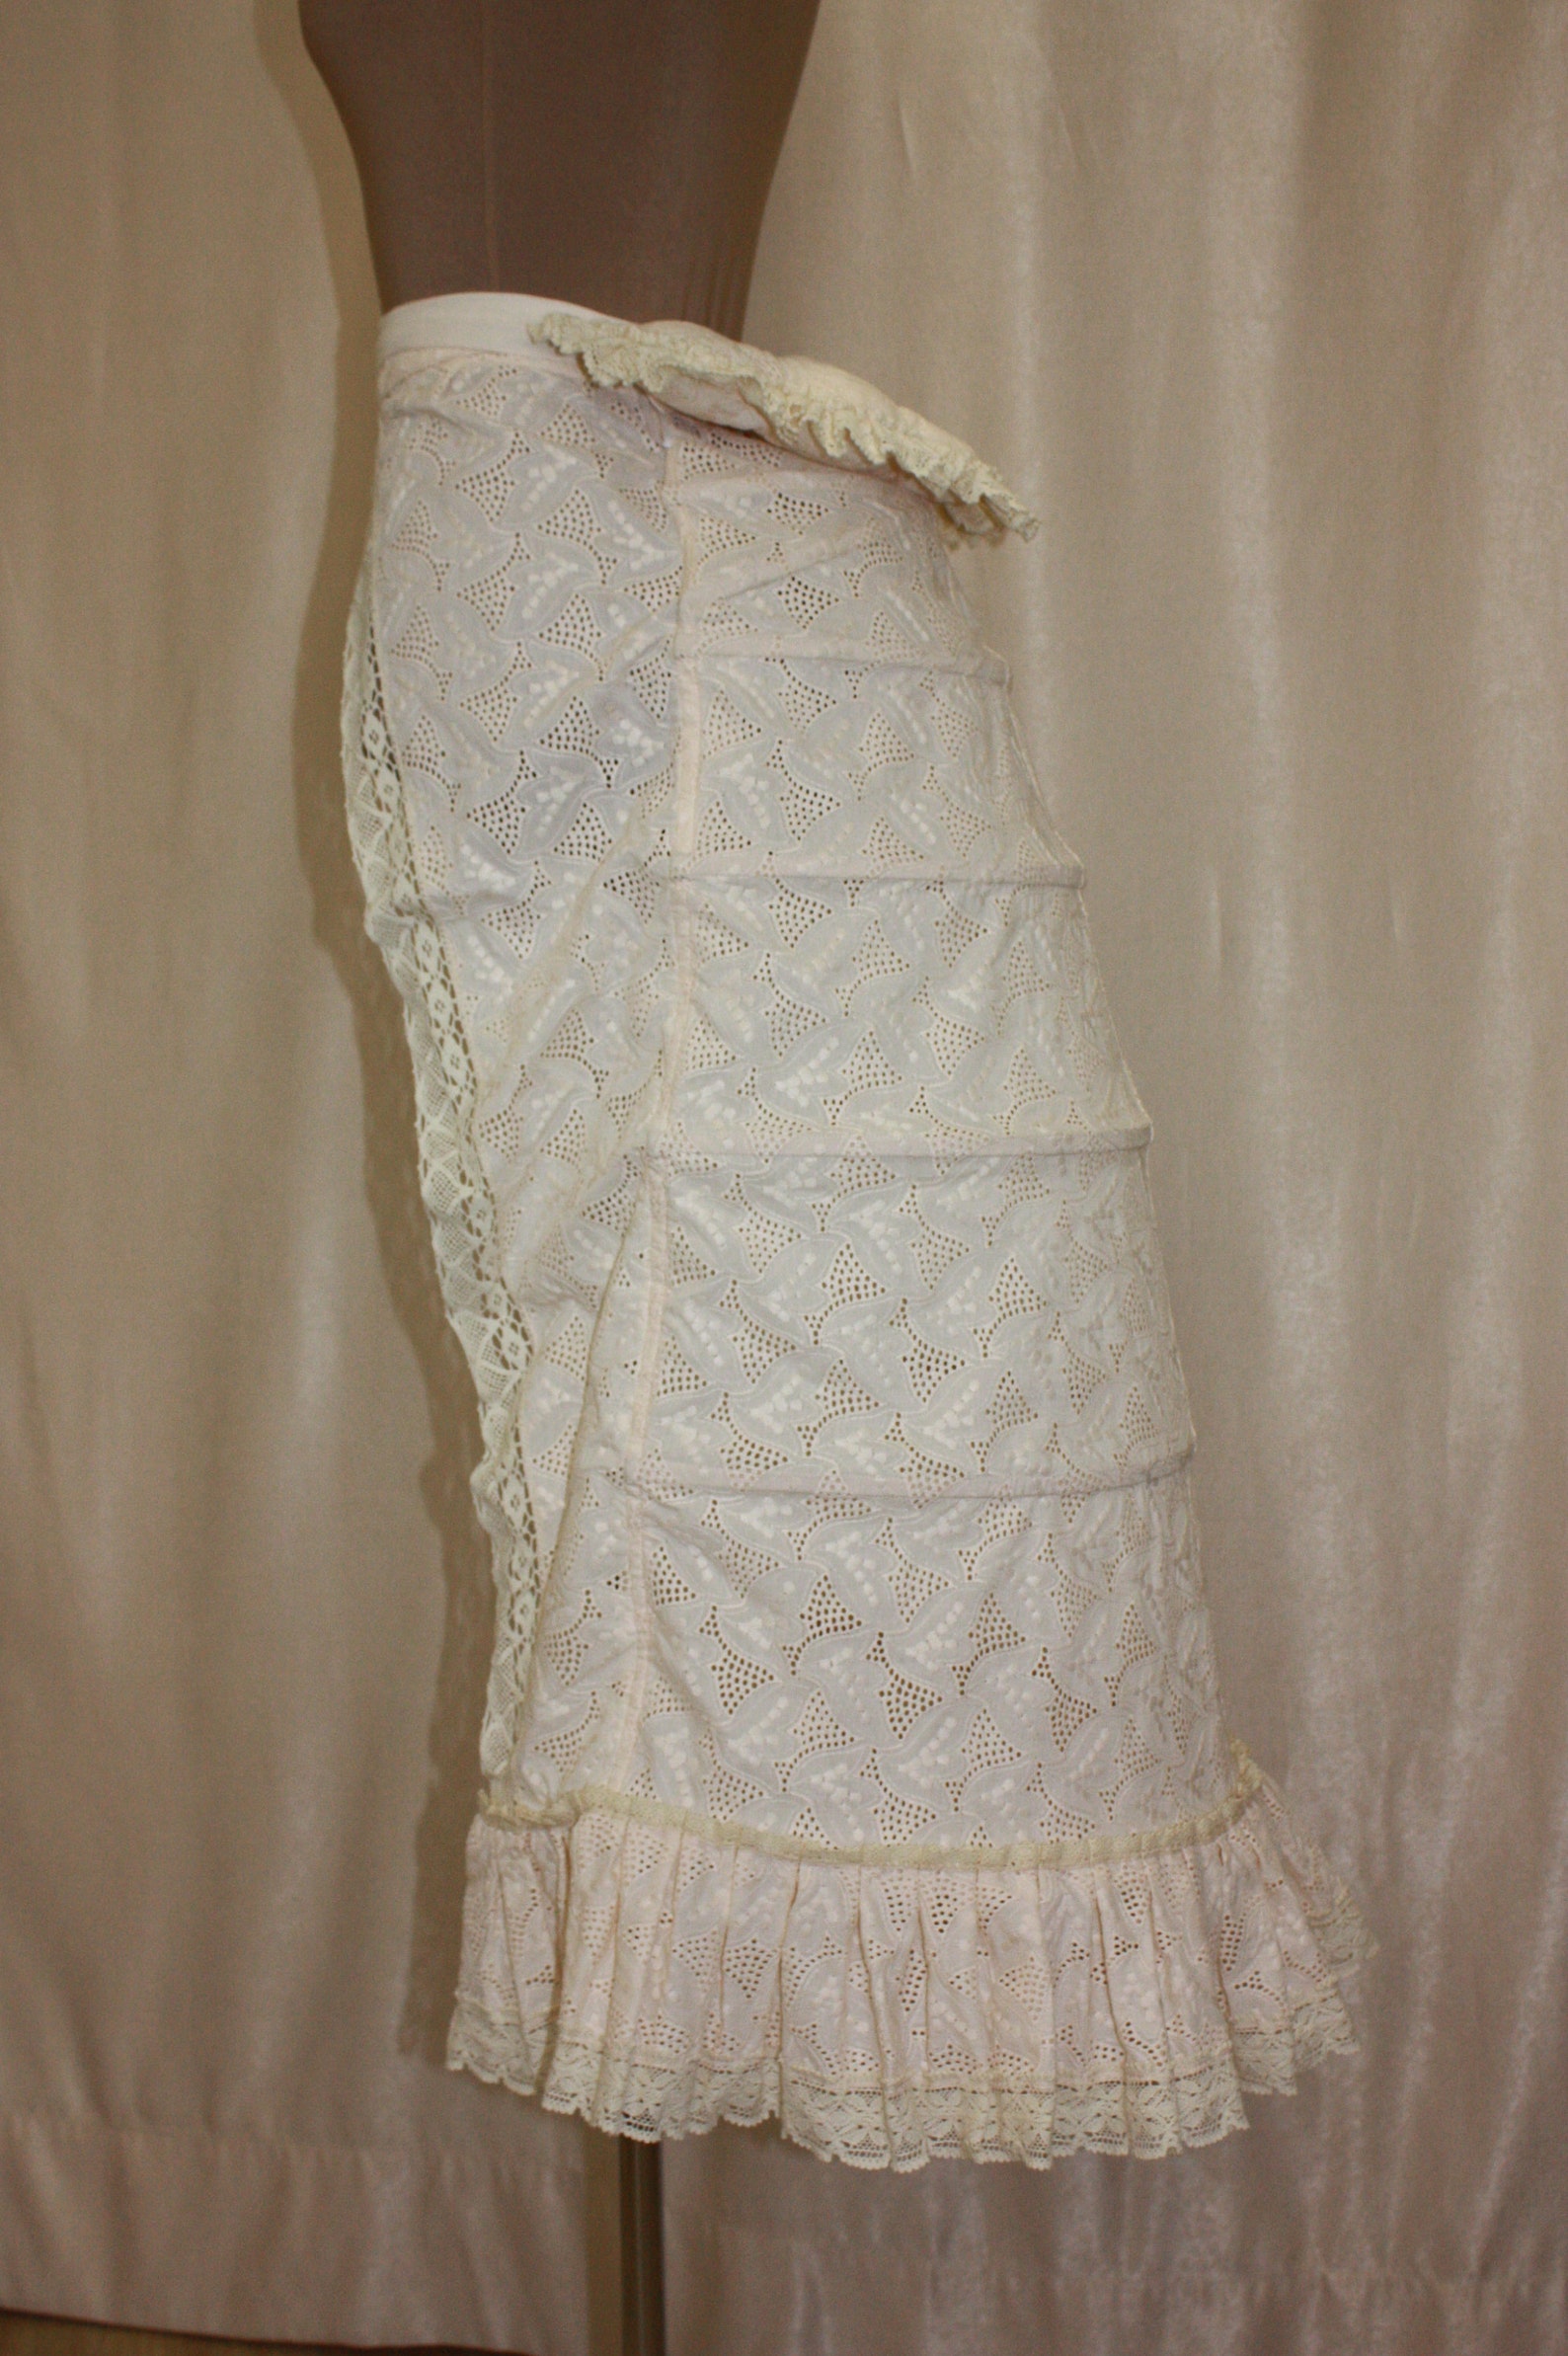 Bustle Gown Cage Victorian Tournure Bustle Gown Underwear | Etsy